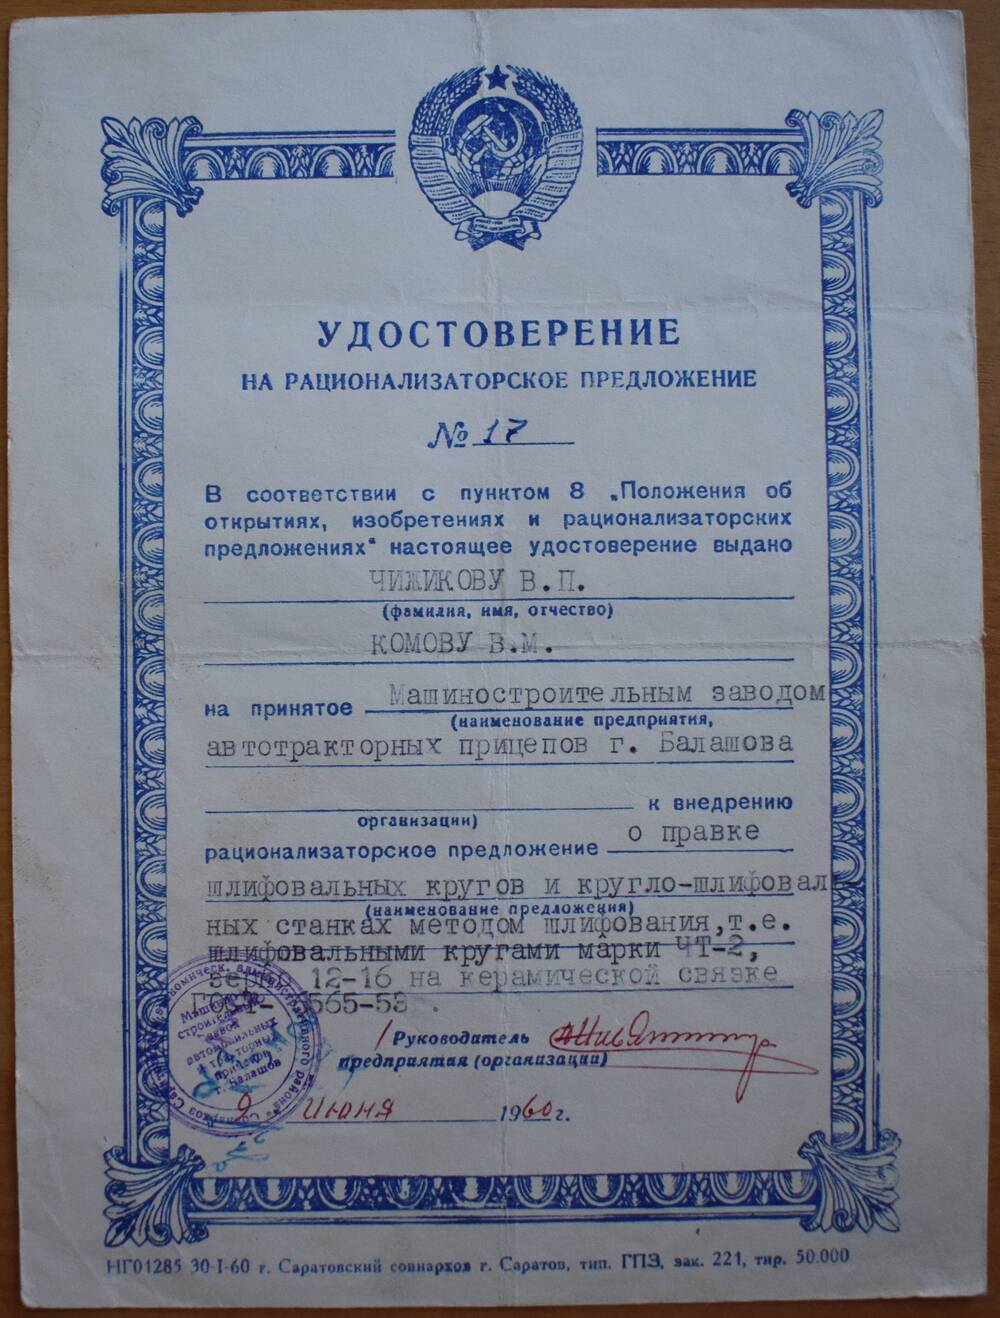 Удостоверение
на рационализаторское предложение № 17
Чижикова В.П. и Комова В.М., слесарей машзавода.